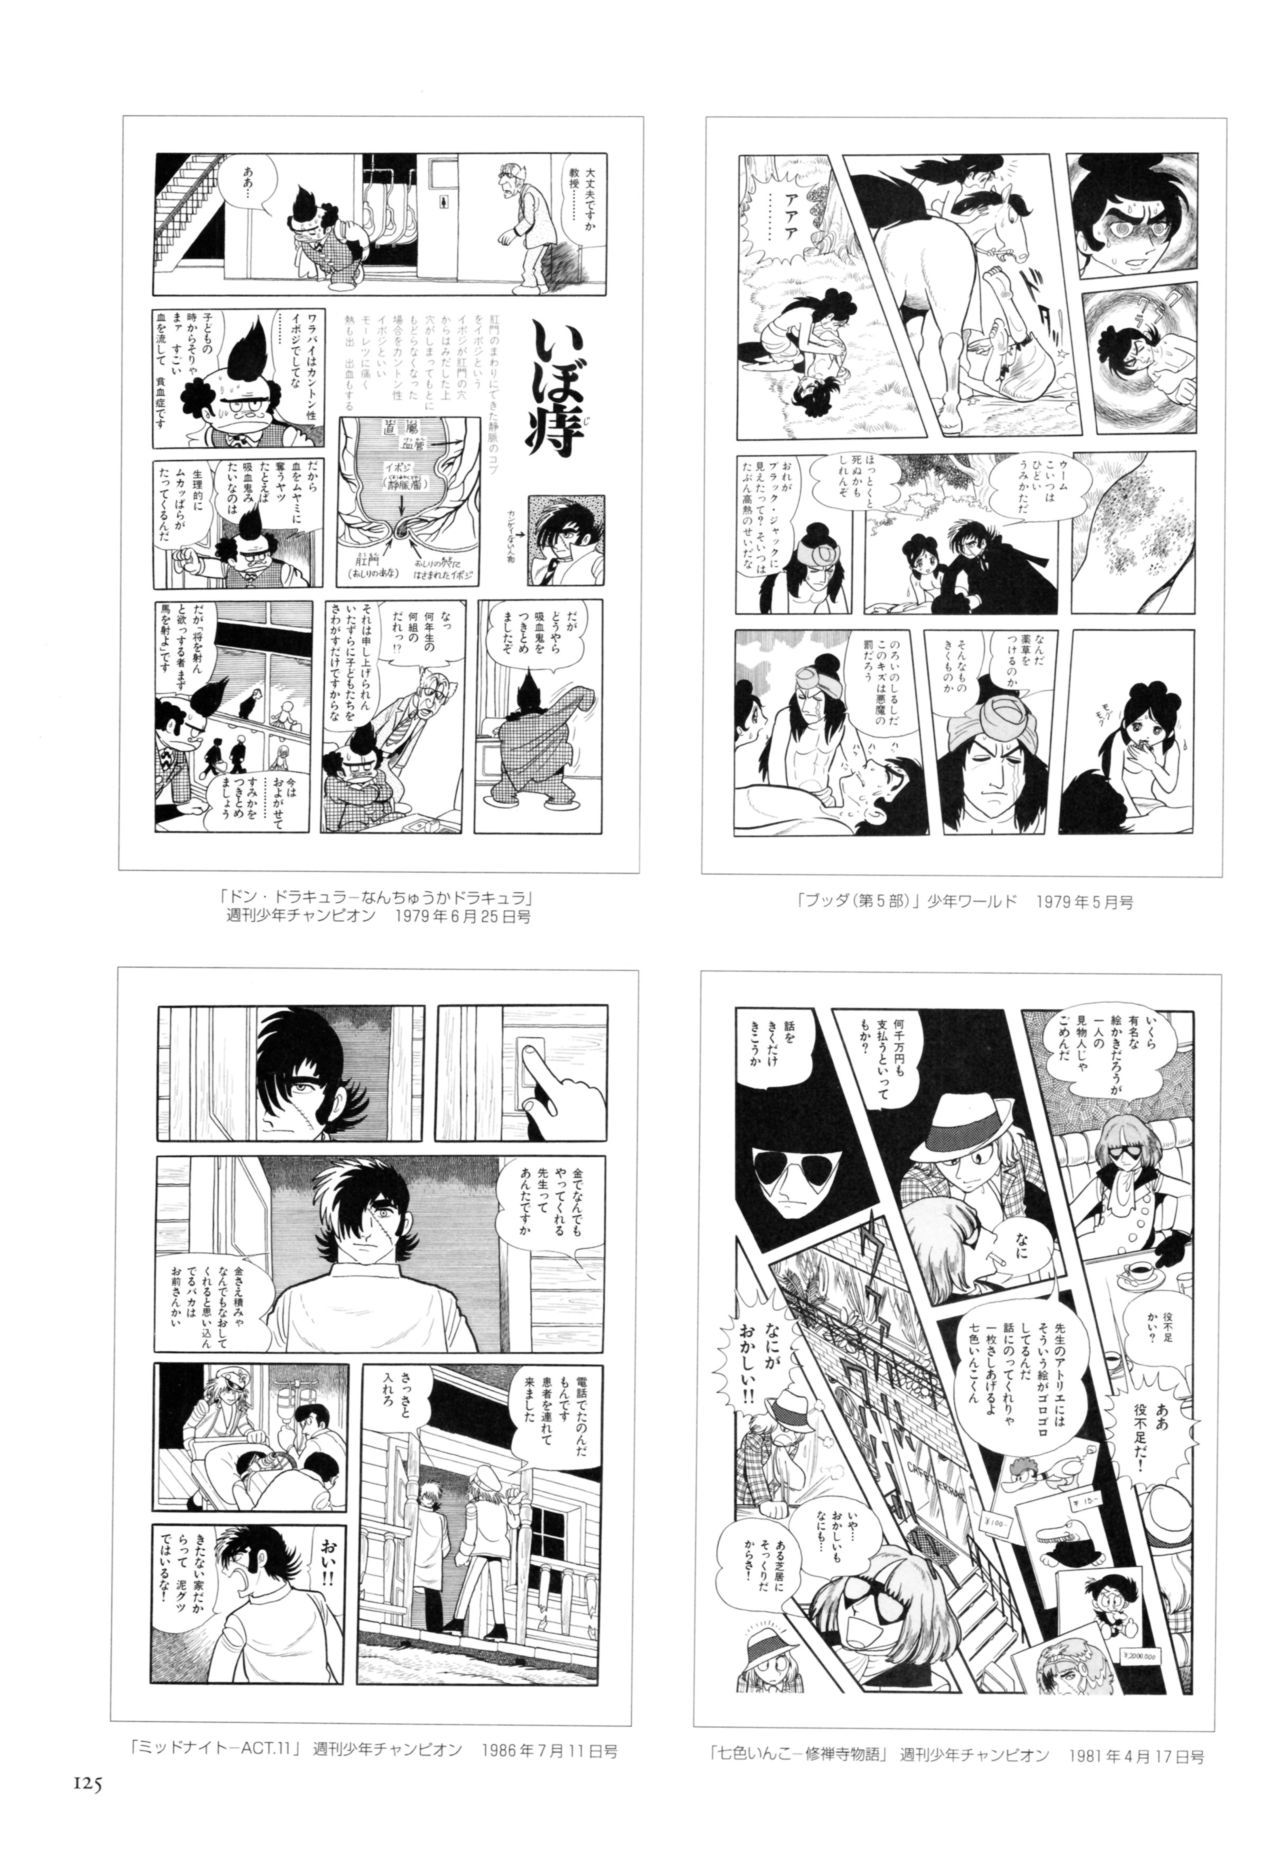 All of Black Jack By Osamu Tezuka 129